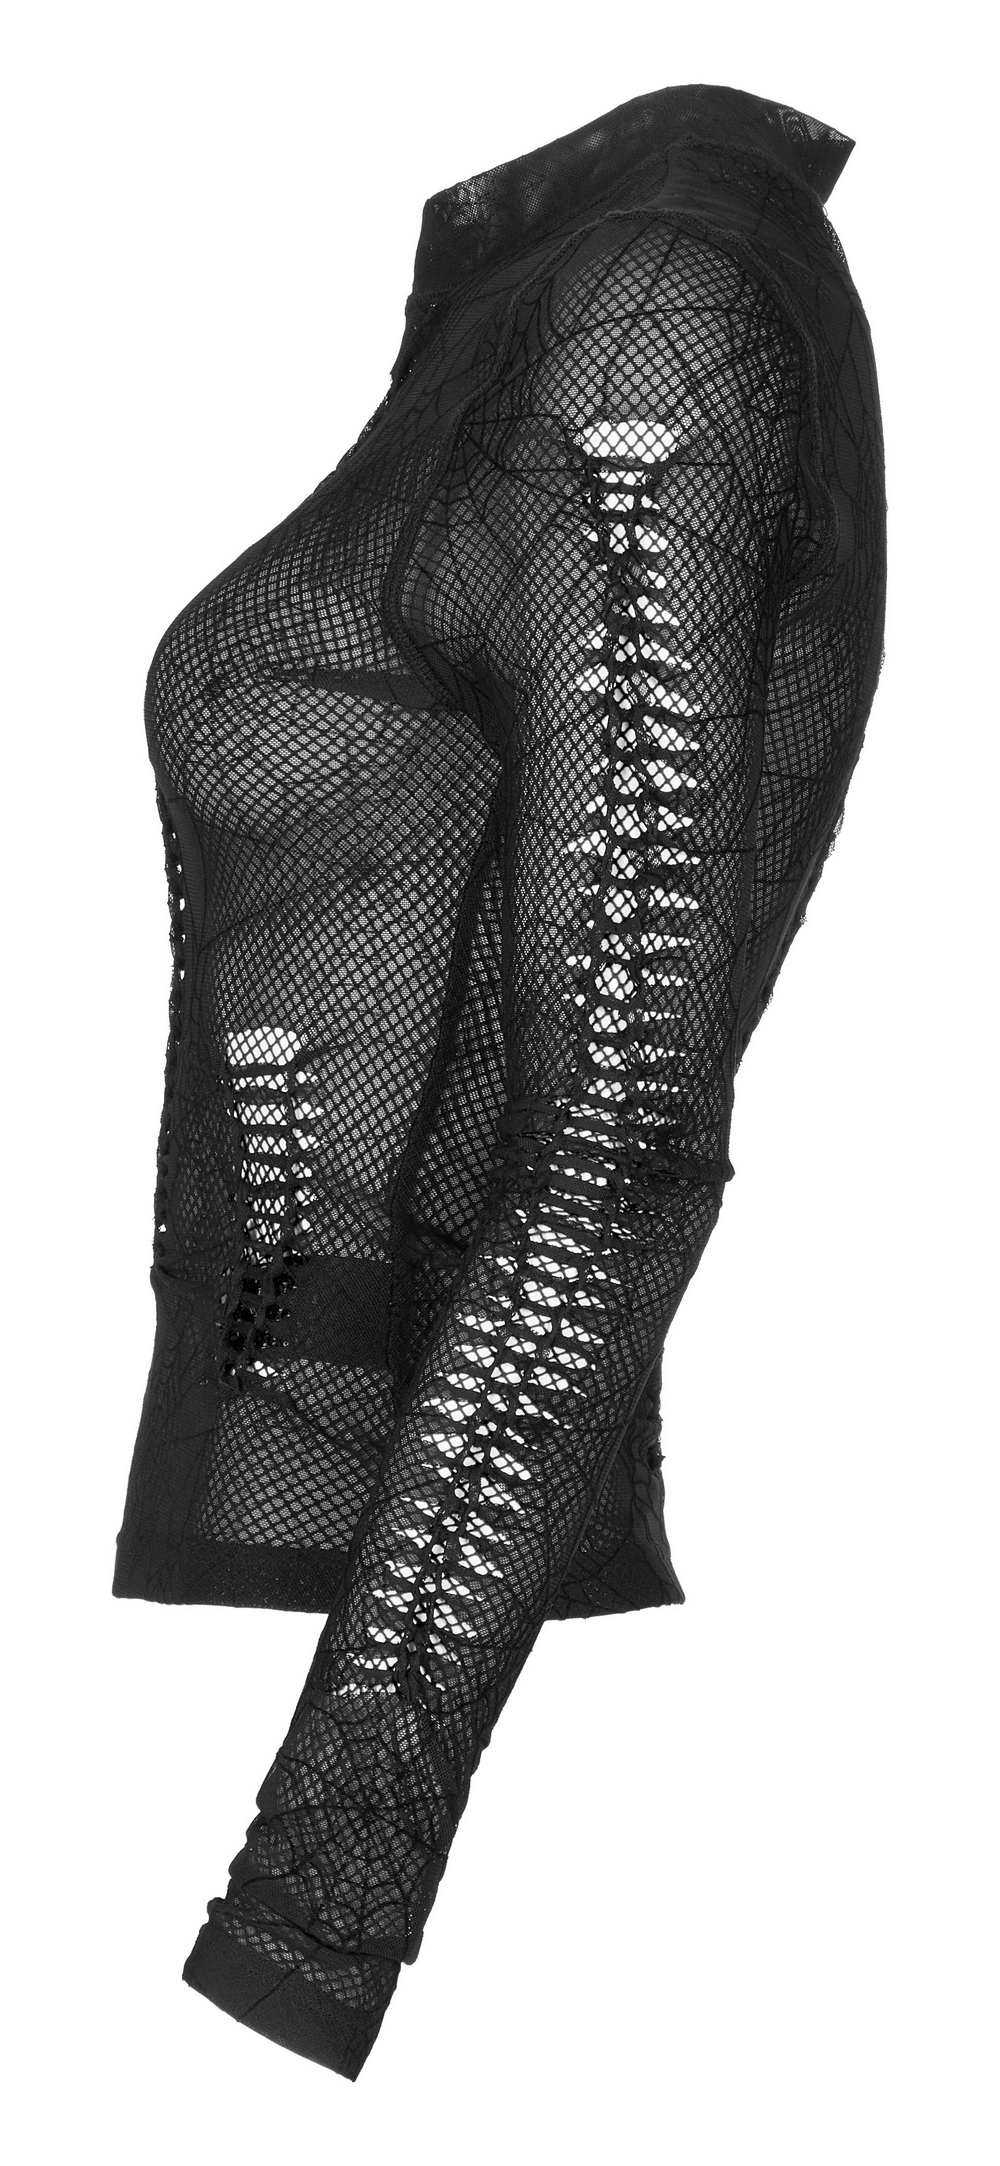 Elegant Sheer Long Sleeves Mesh Top with Spiderweb Design